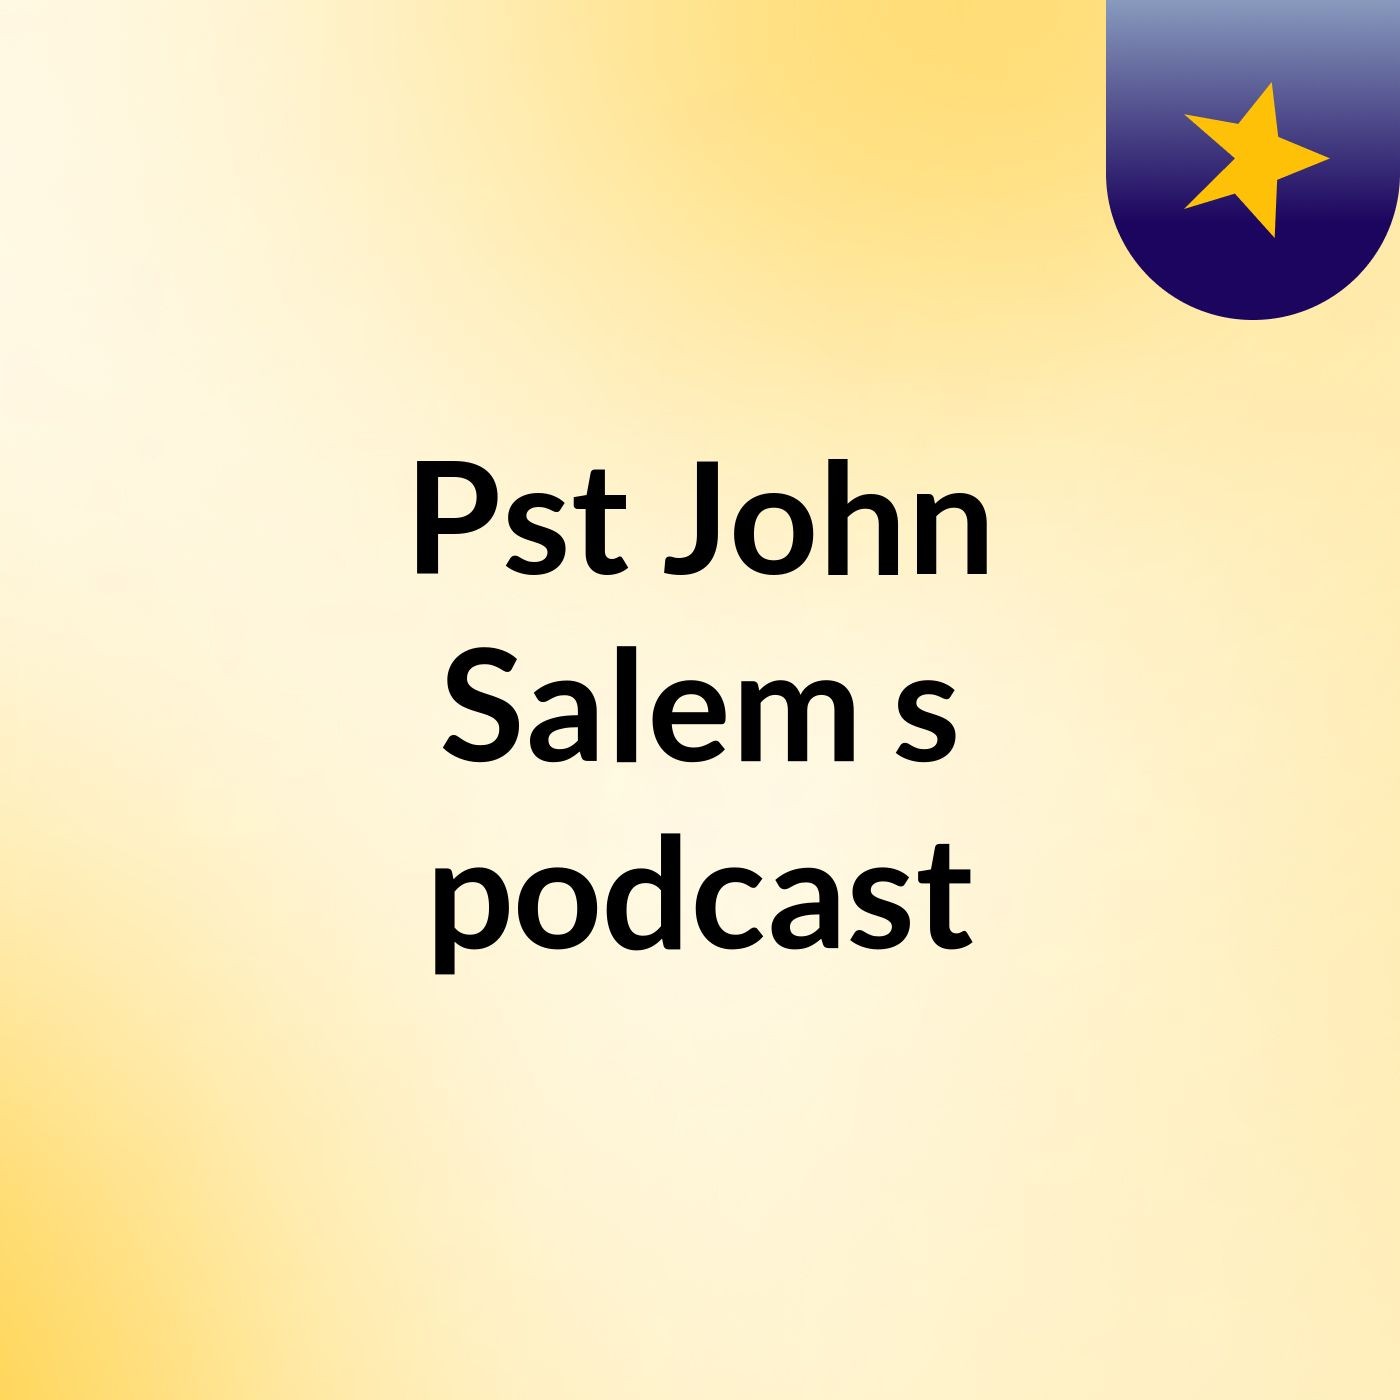 Episode 2 - Pst John Salem's podcast